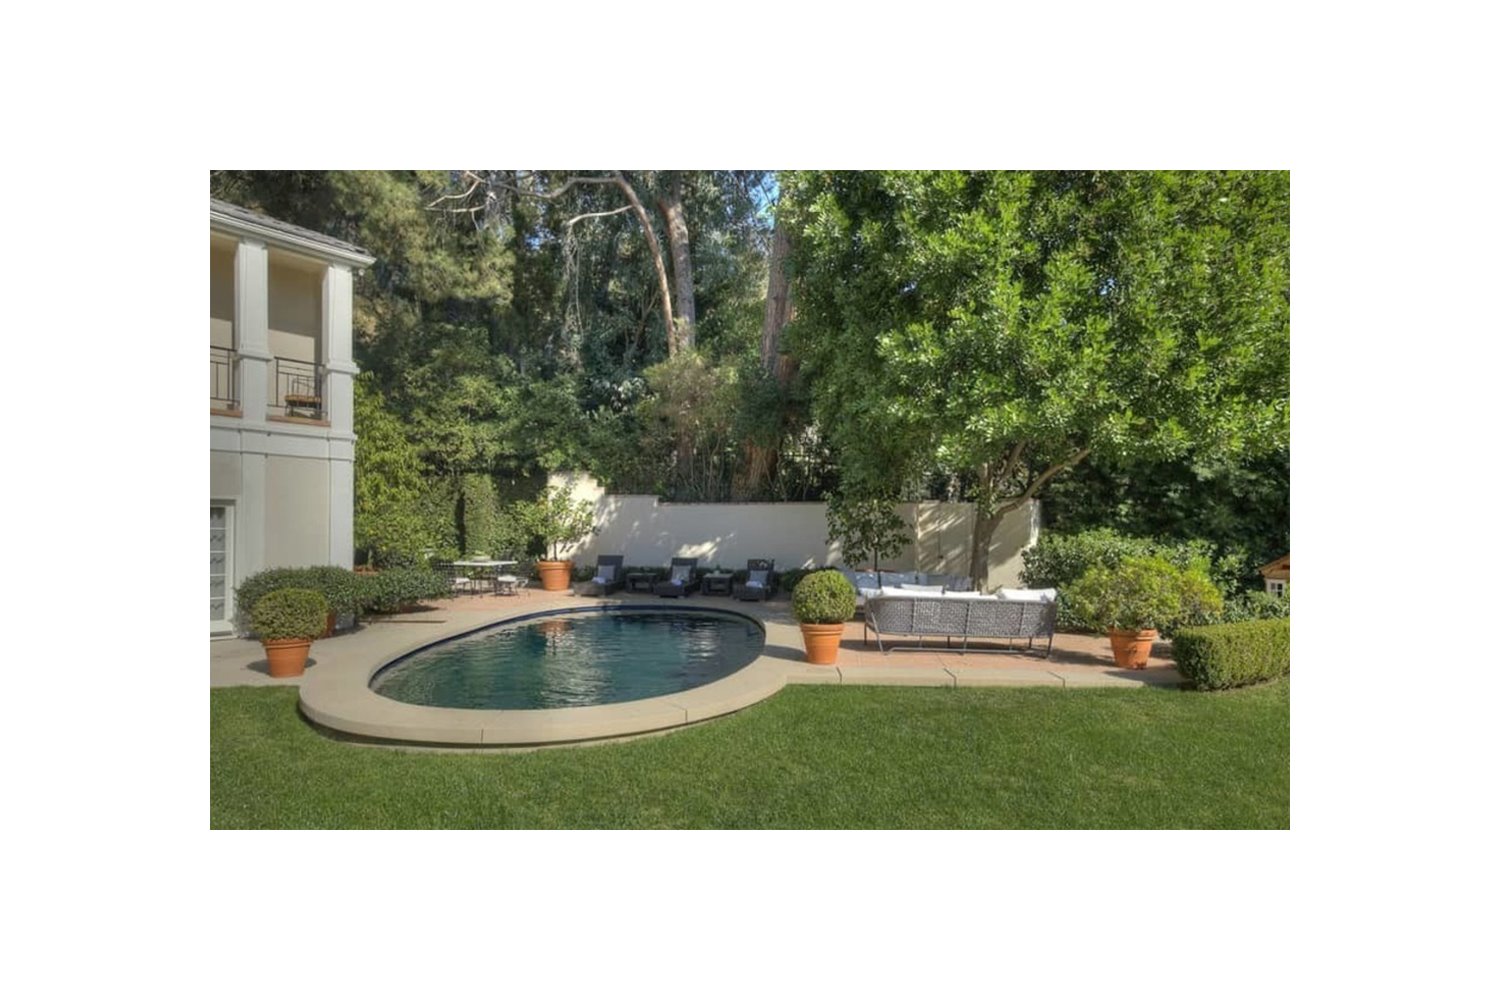 Casa de Katy Perry en Beverly Hills piscina